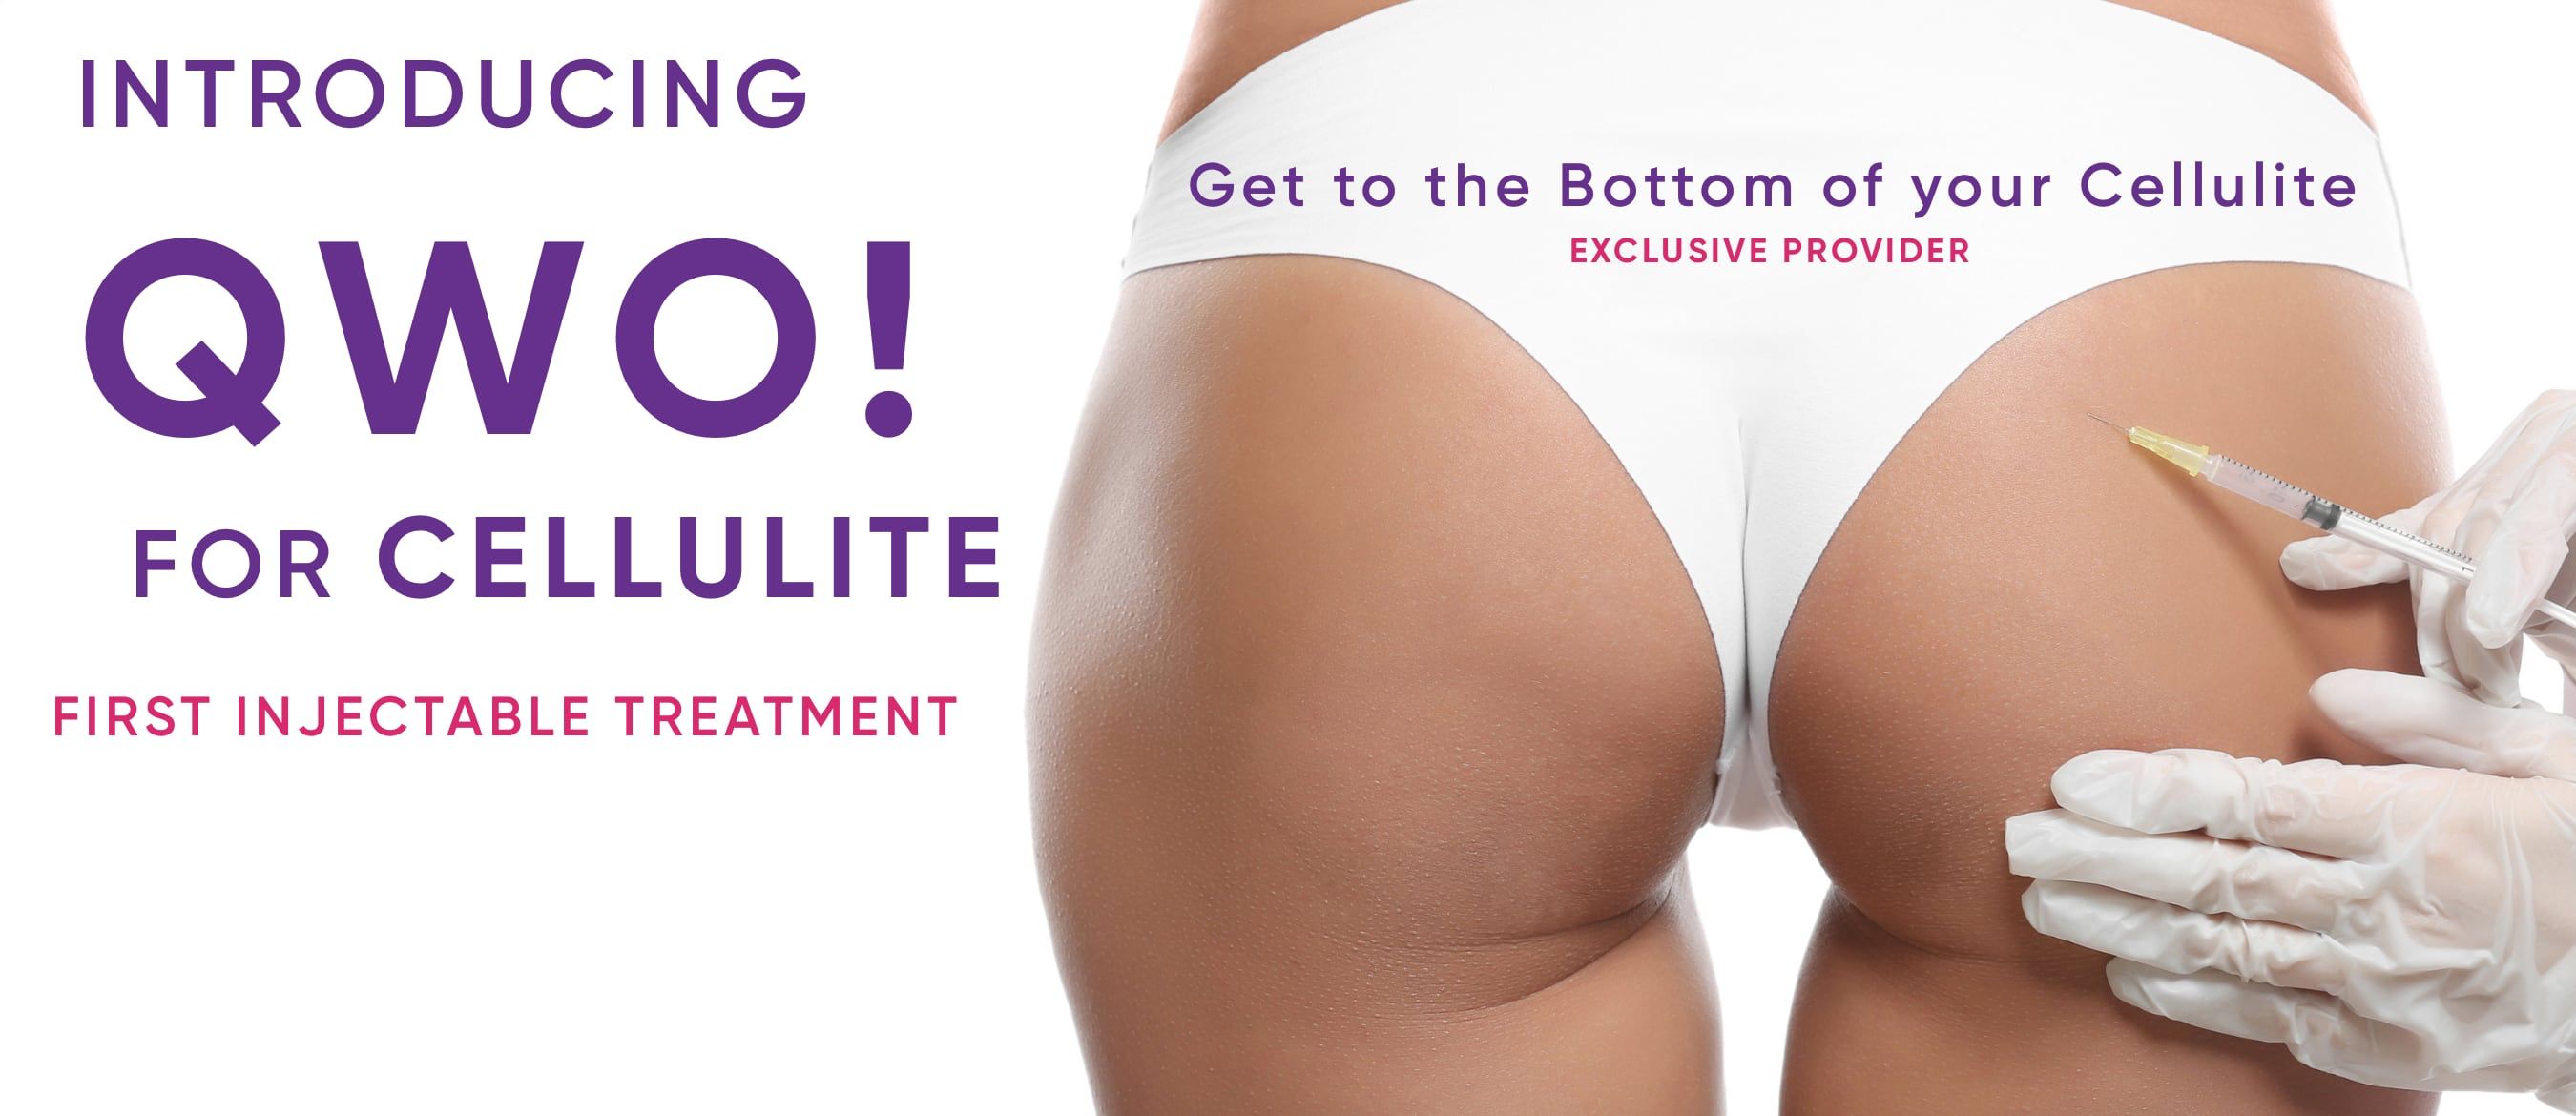 qwo cellulite treatment banner